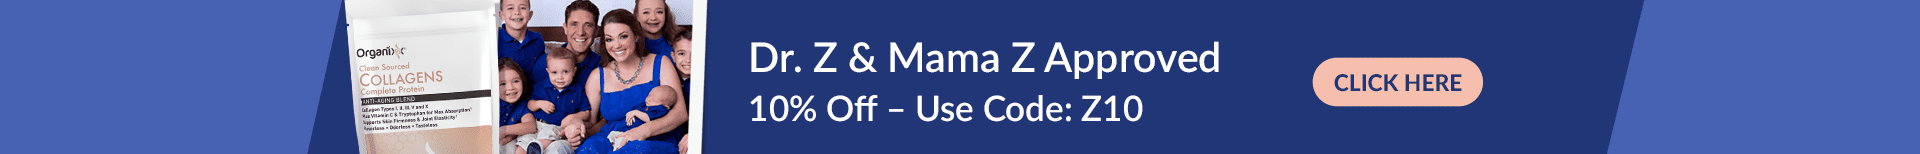 Dr. Z & Mama Z